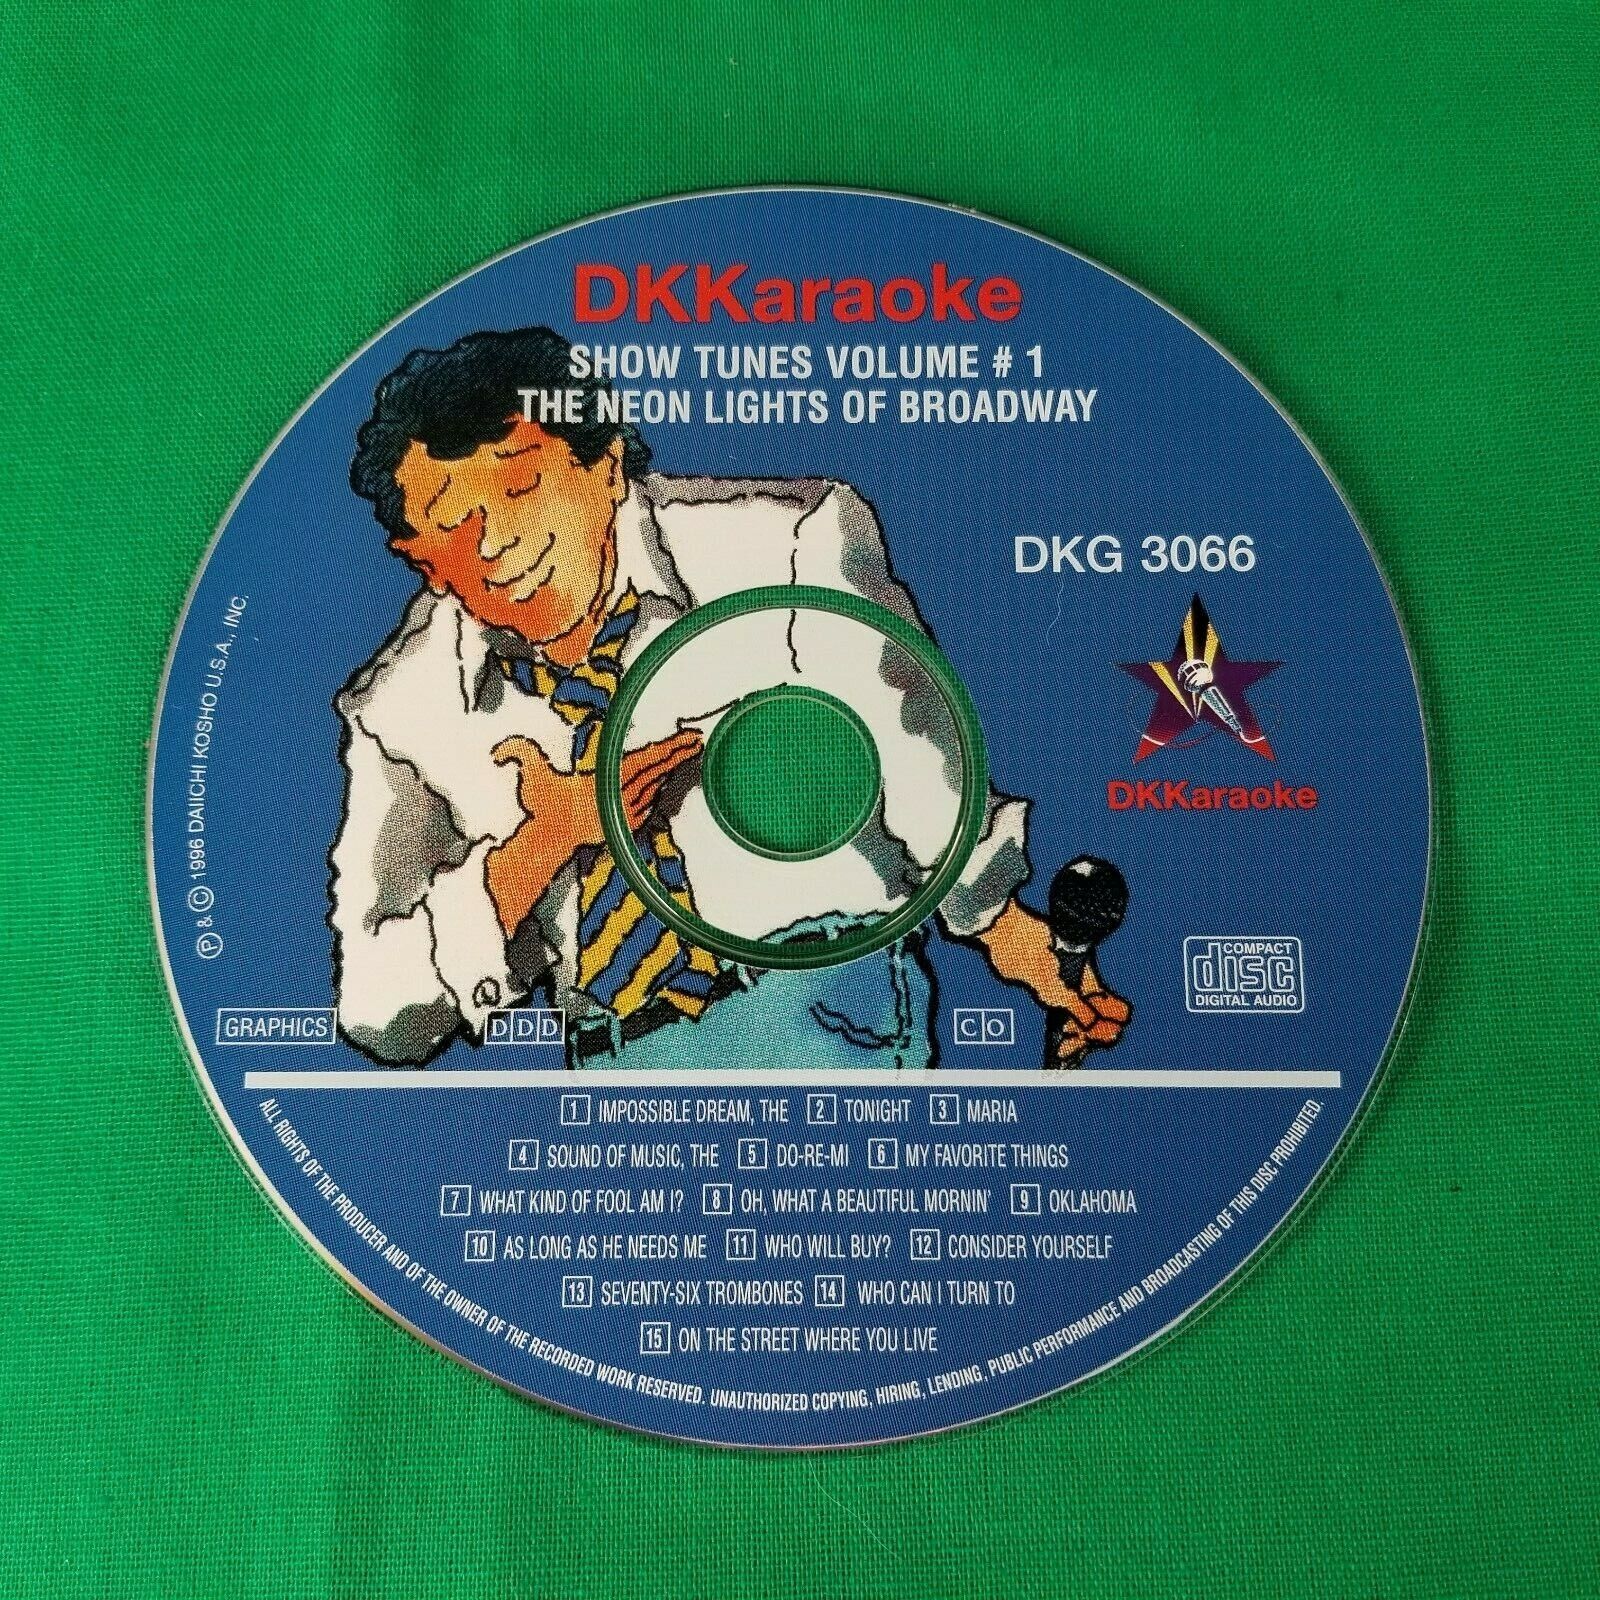 Lot of 2 DKKaraoke Show Tunes Volume 1 & 2 - 3066, 3067 - Pre-owned DK Karaoke - фотография #2